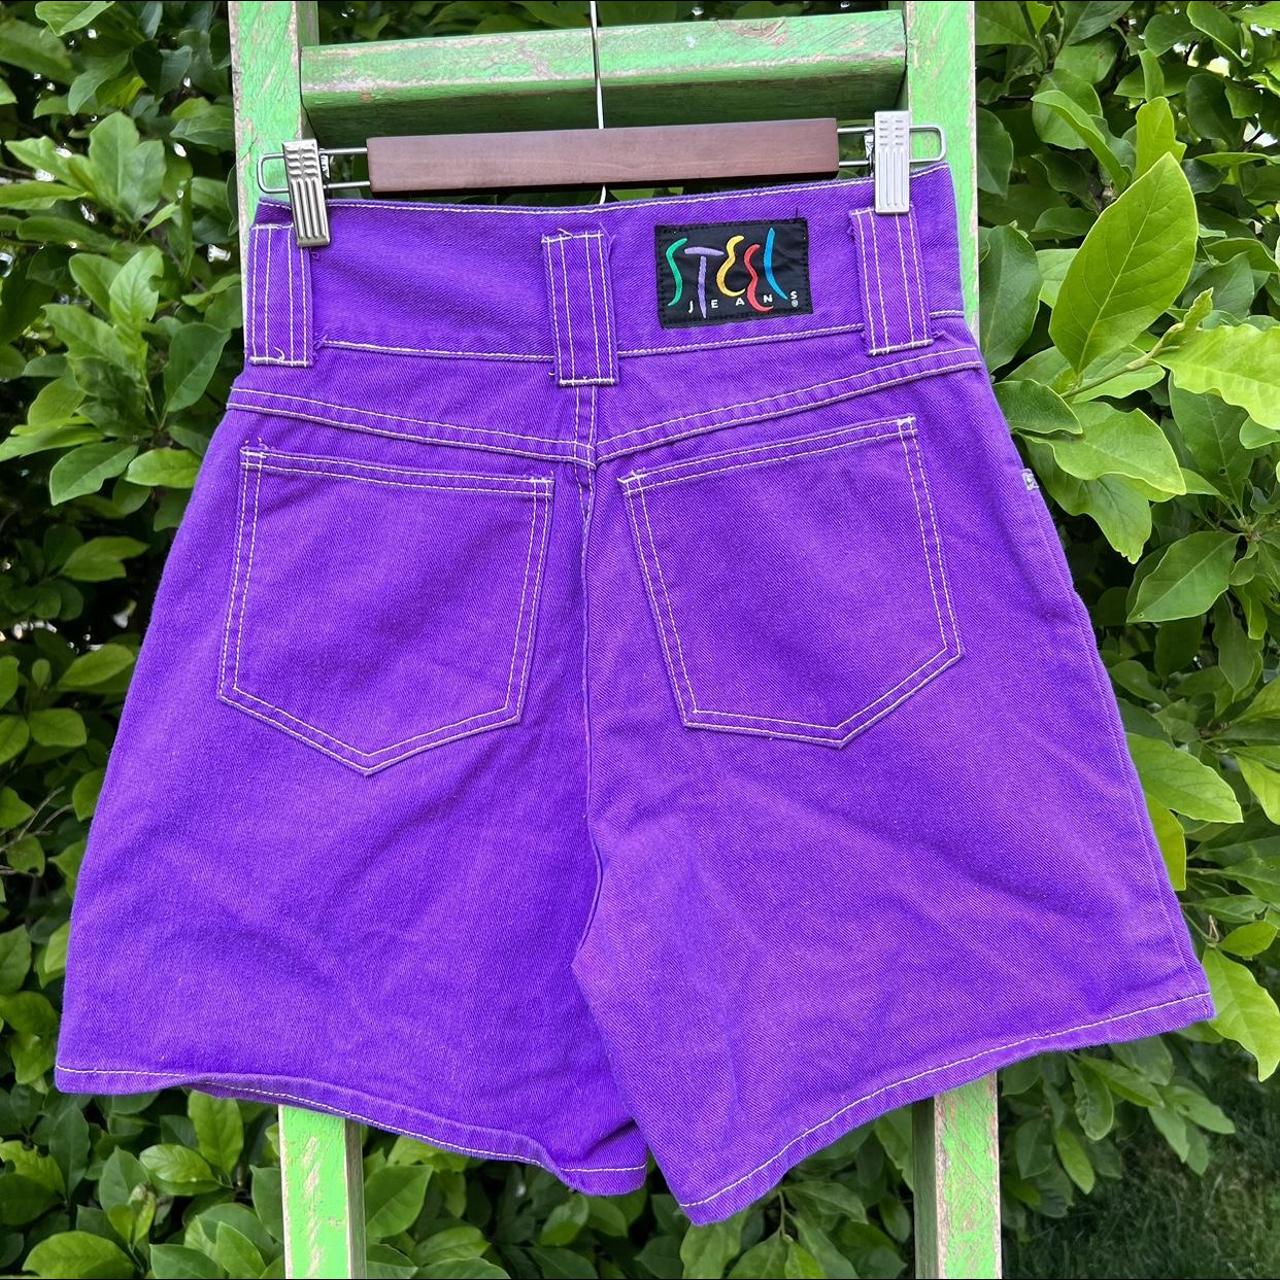 STEEL Jeans Women's Purple Shorts | Depop